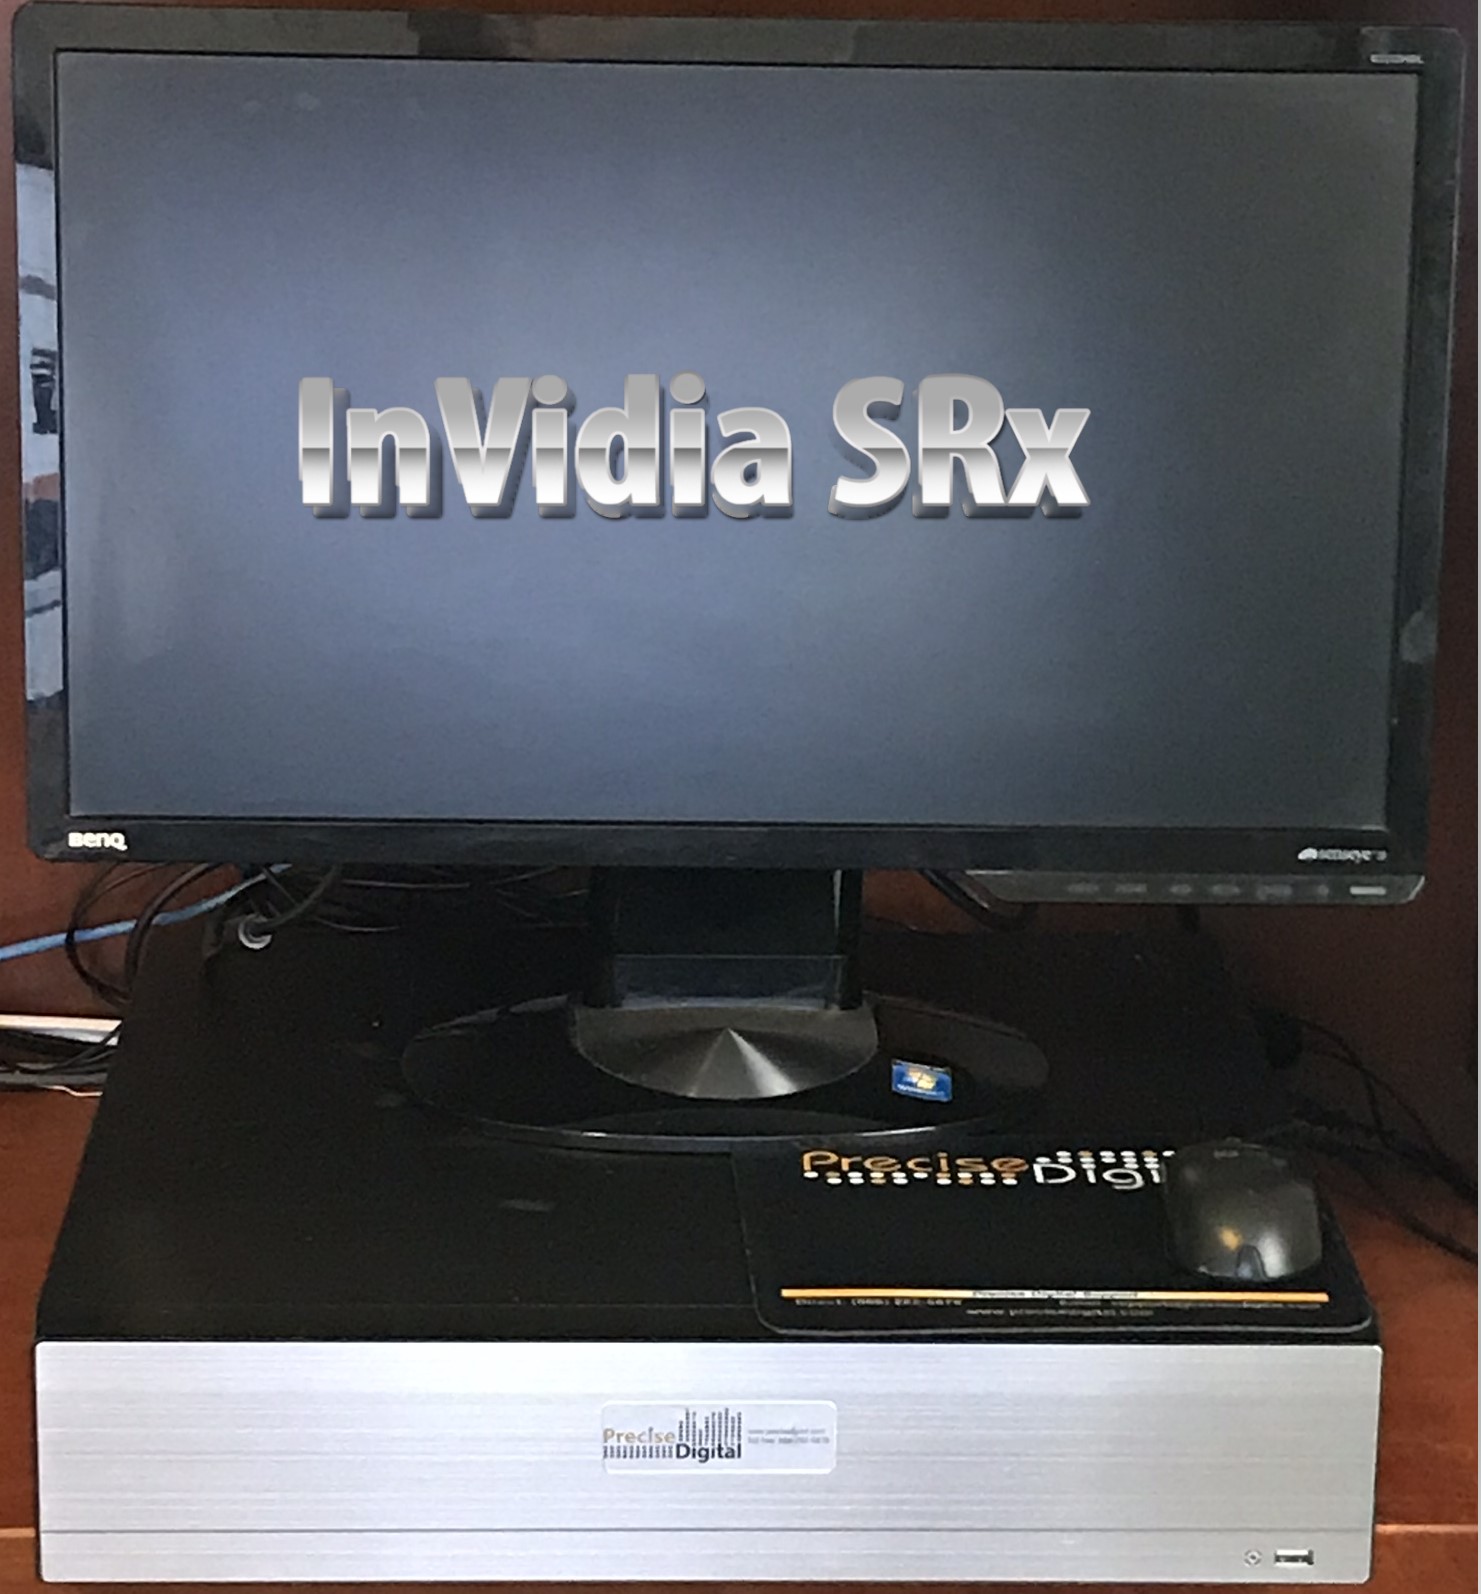 InVidia SRx Interview Recorder